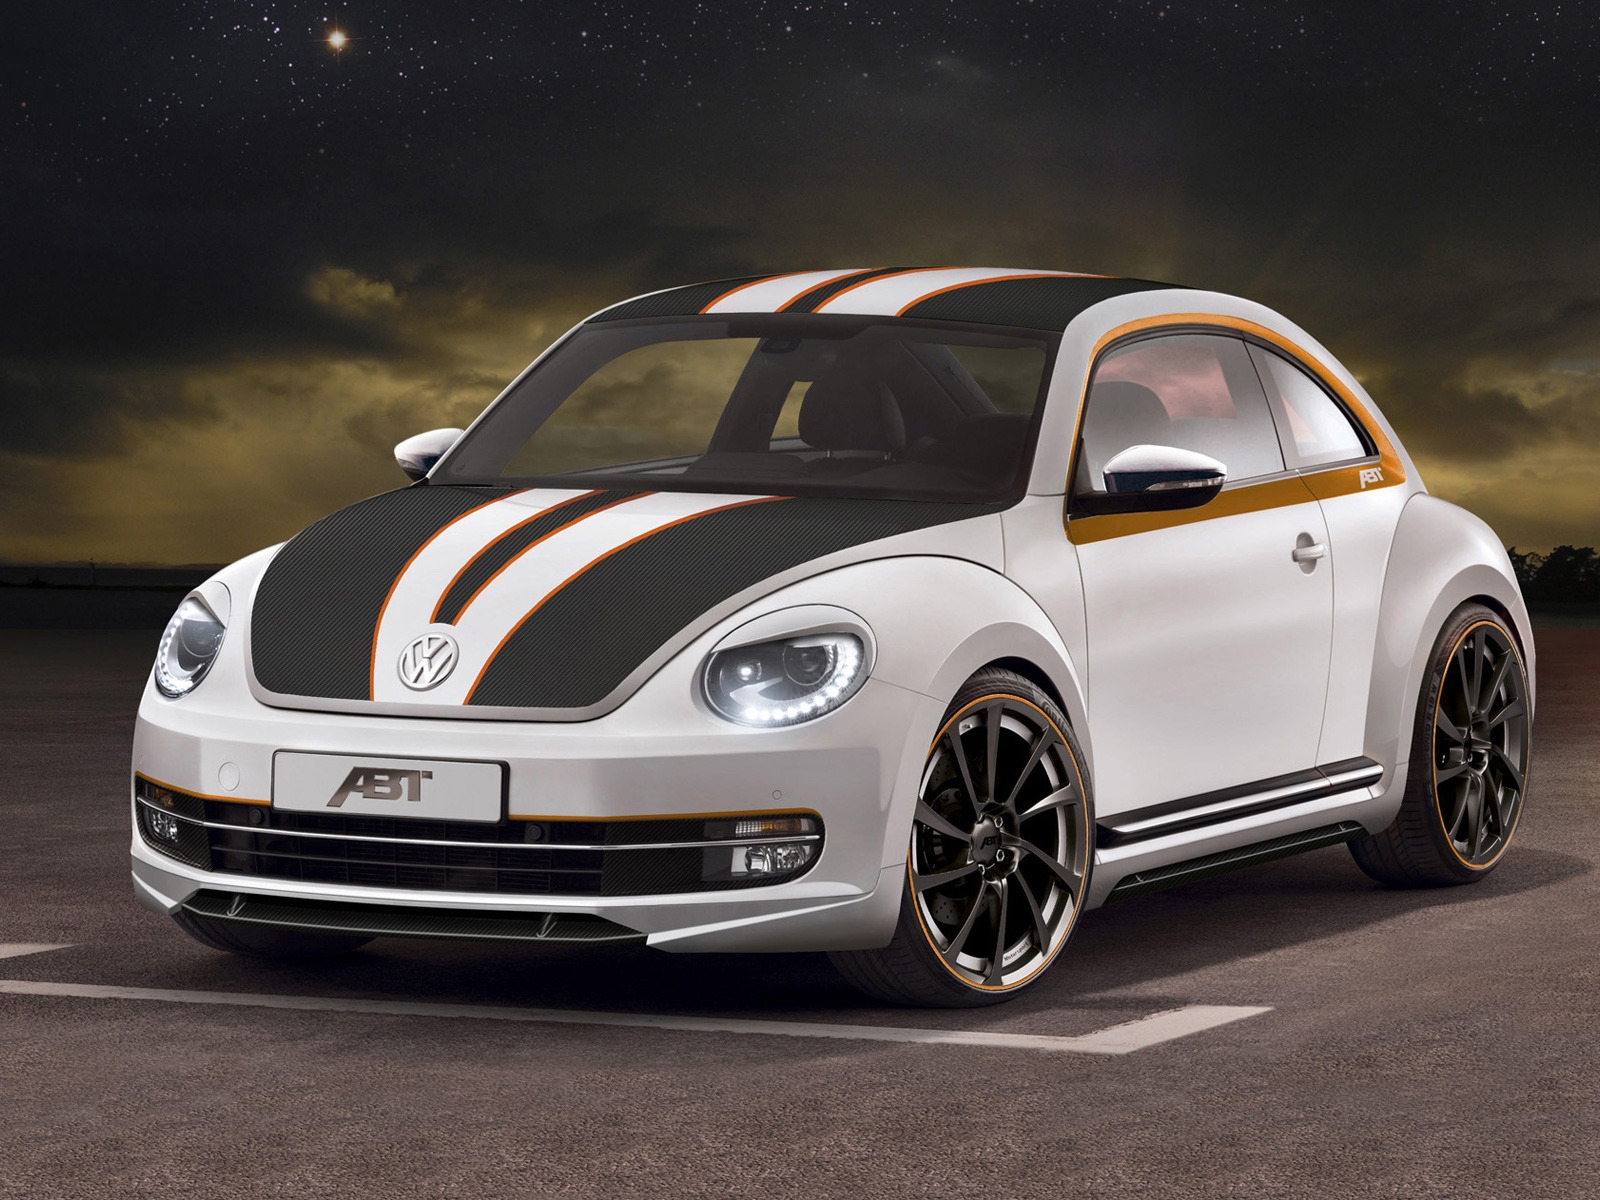 2012 ABT Volkswagen Beetle for 1600 x 1200 resolution